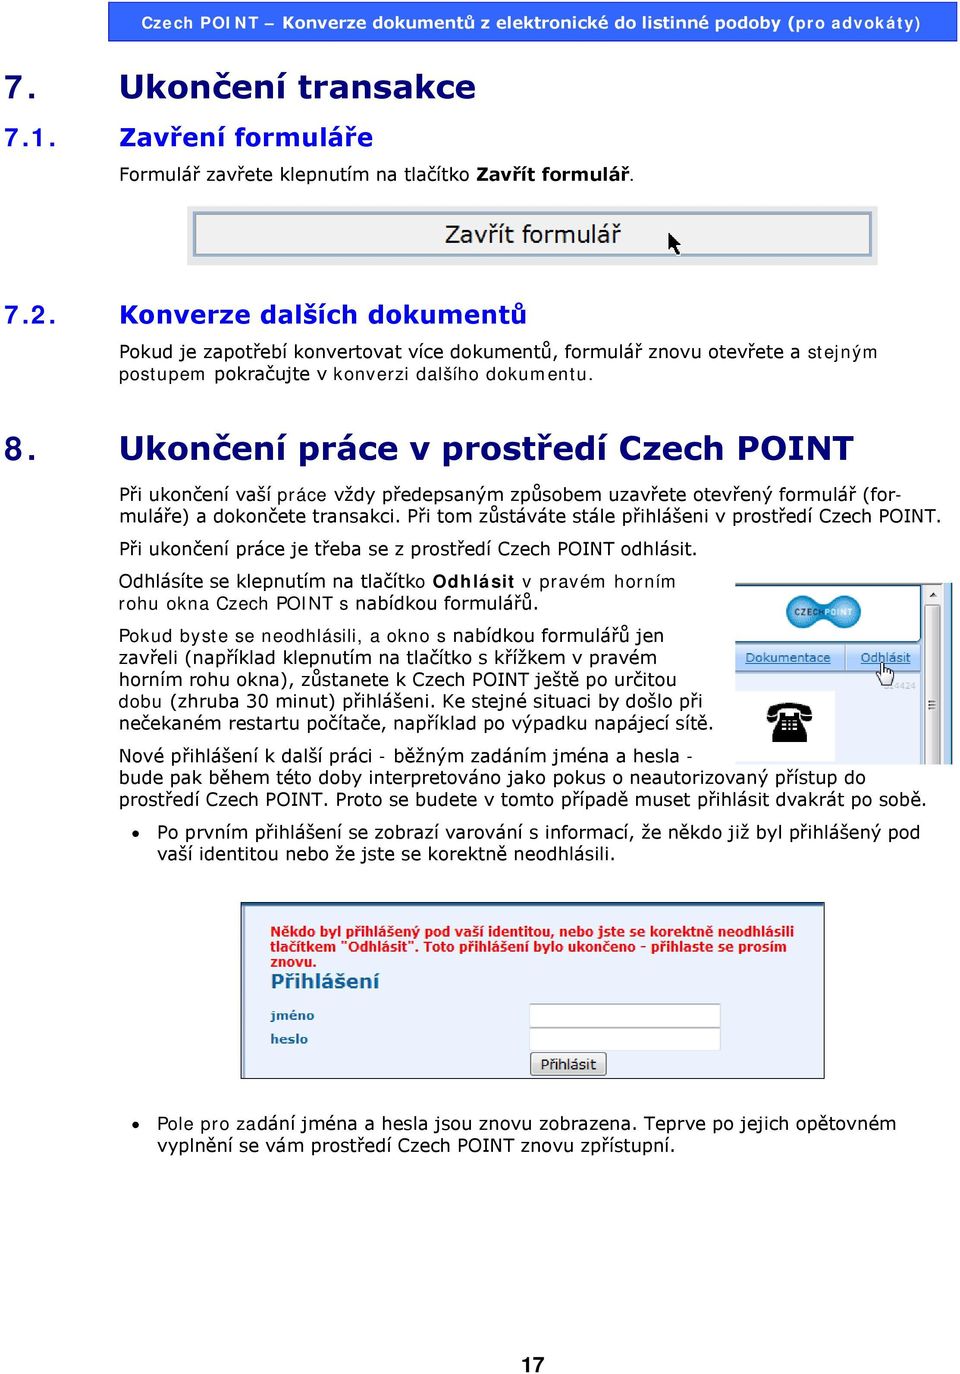 Ukončení práce v prostředí Czech POINT Při ukončení vaší práce vždy předepsaným způsobem uzavřete otevřený formulář (formuláře) a dokončete transakci.